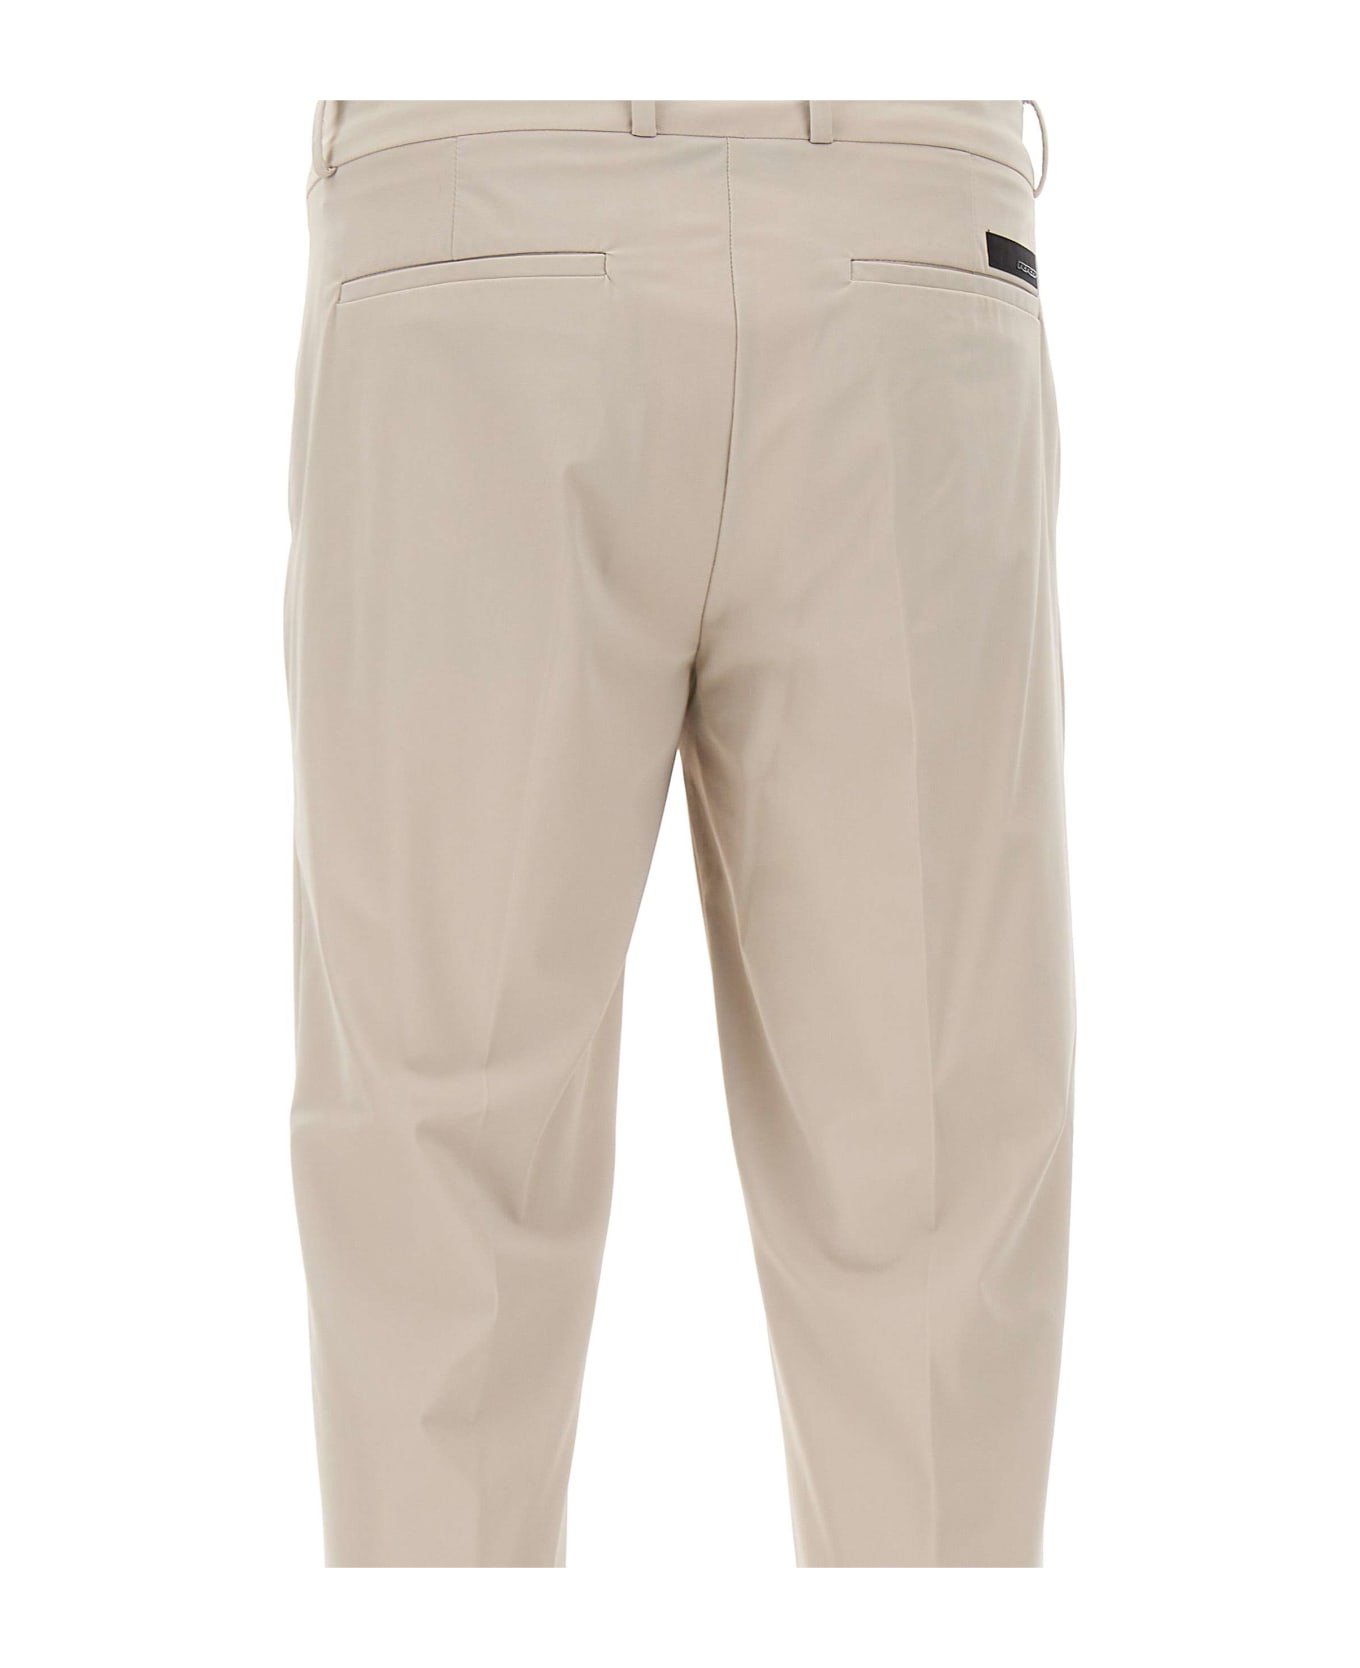 RRD - Roberto Ricci Design Men's Trousers 'revo Chino' - Grigio